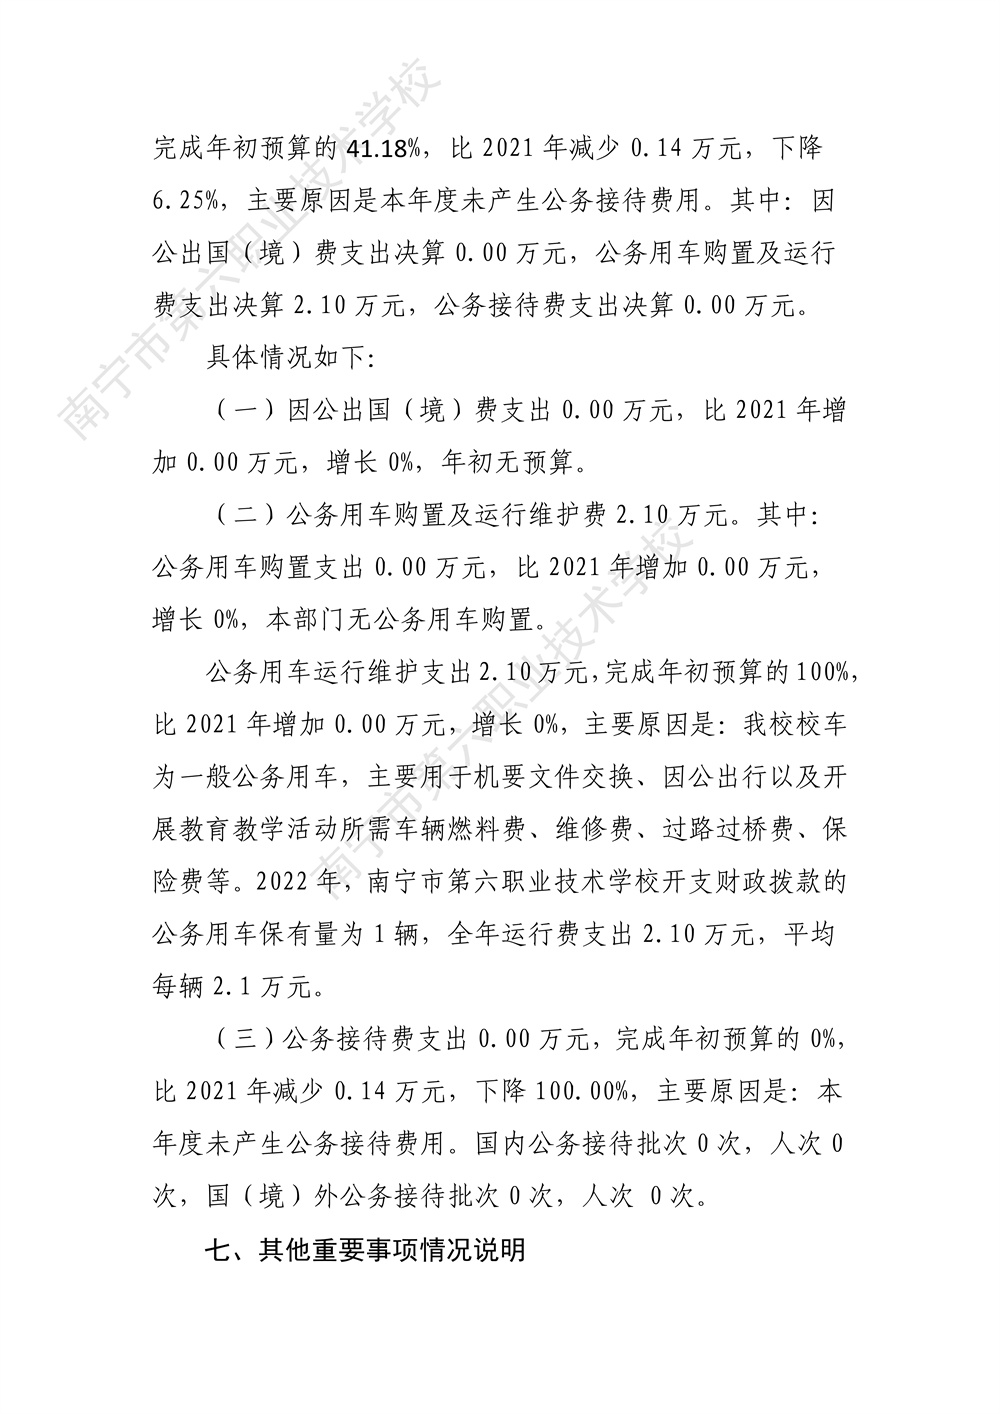 南宁市第六职业技术学校2022年度部门决算公开（终版）_33.jpg